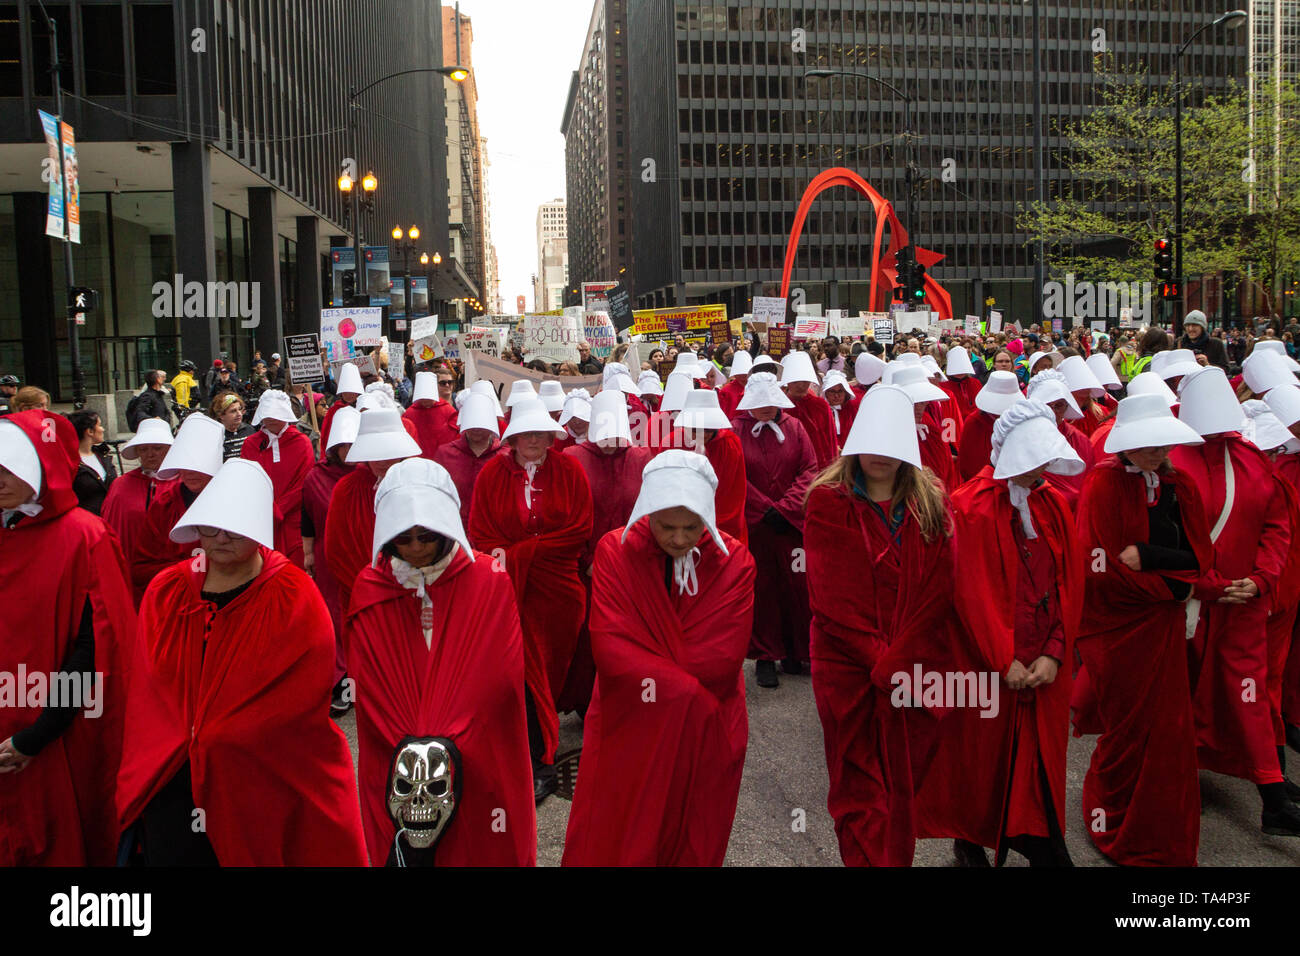 Frauen Rallye in Chicago Federal Plaza die reproduktive Freiheit angesichts der vielen Staaten, strenge Abtreibung verbietet zu schützen. Die Demonstranten auf der Plaza um 5 Uhr zu reden hörte und dann marschierte durch die Schlaufe geführt durch Dutzende von Frauen gekleidet als Mägde von dystopischen Roman Margaret Atwood's, die Geschichte der Dienerin. Stockfoto